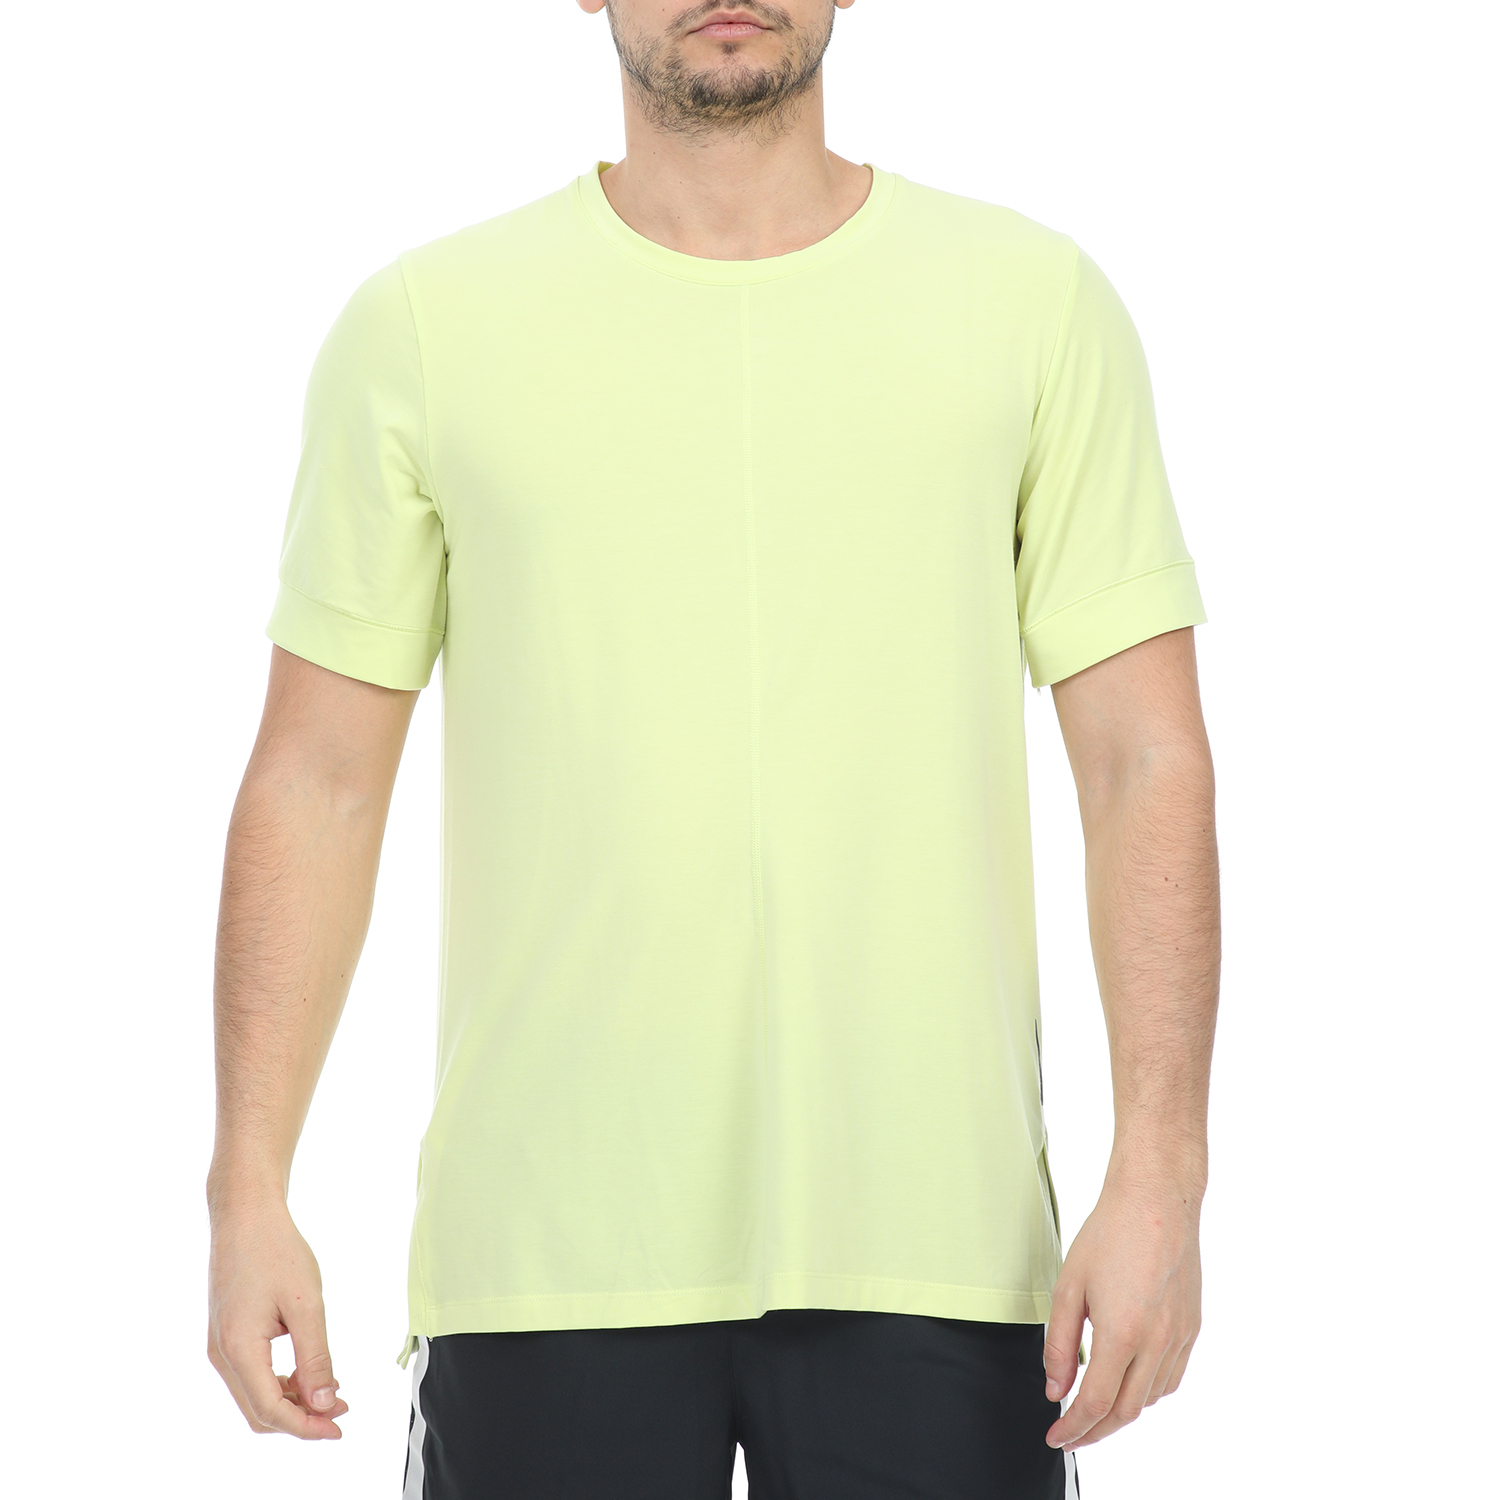 Ανδρικά/Ρούχα/Αθλητικά/T-shirt NIKE - Ανδρική μπλούζα NIKE DF TOP SS YOGA κίτρινη